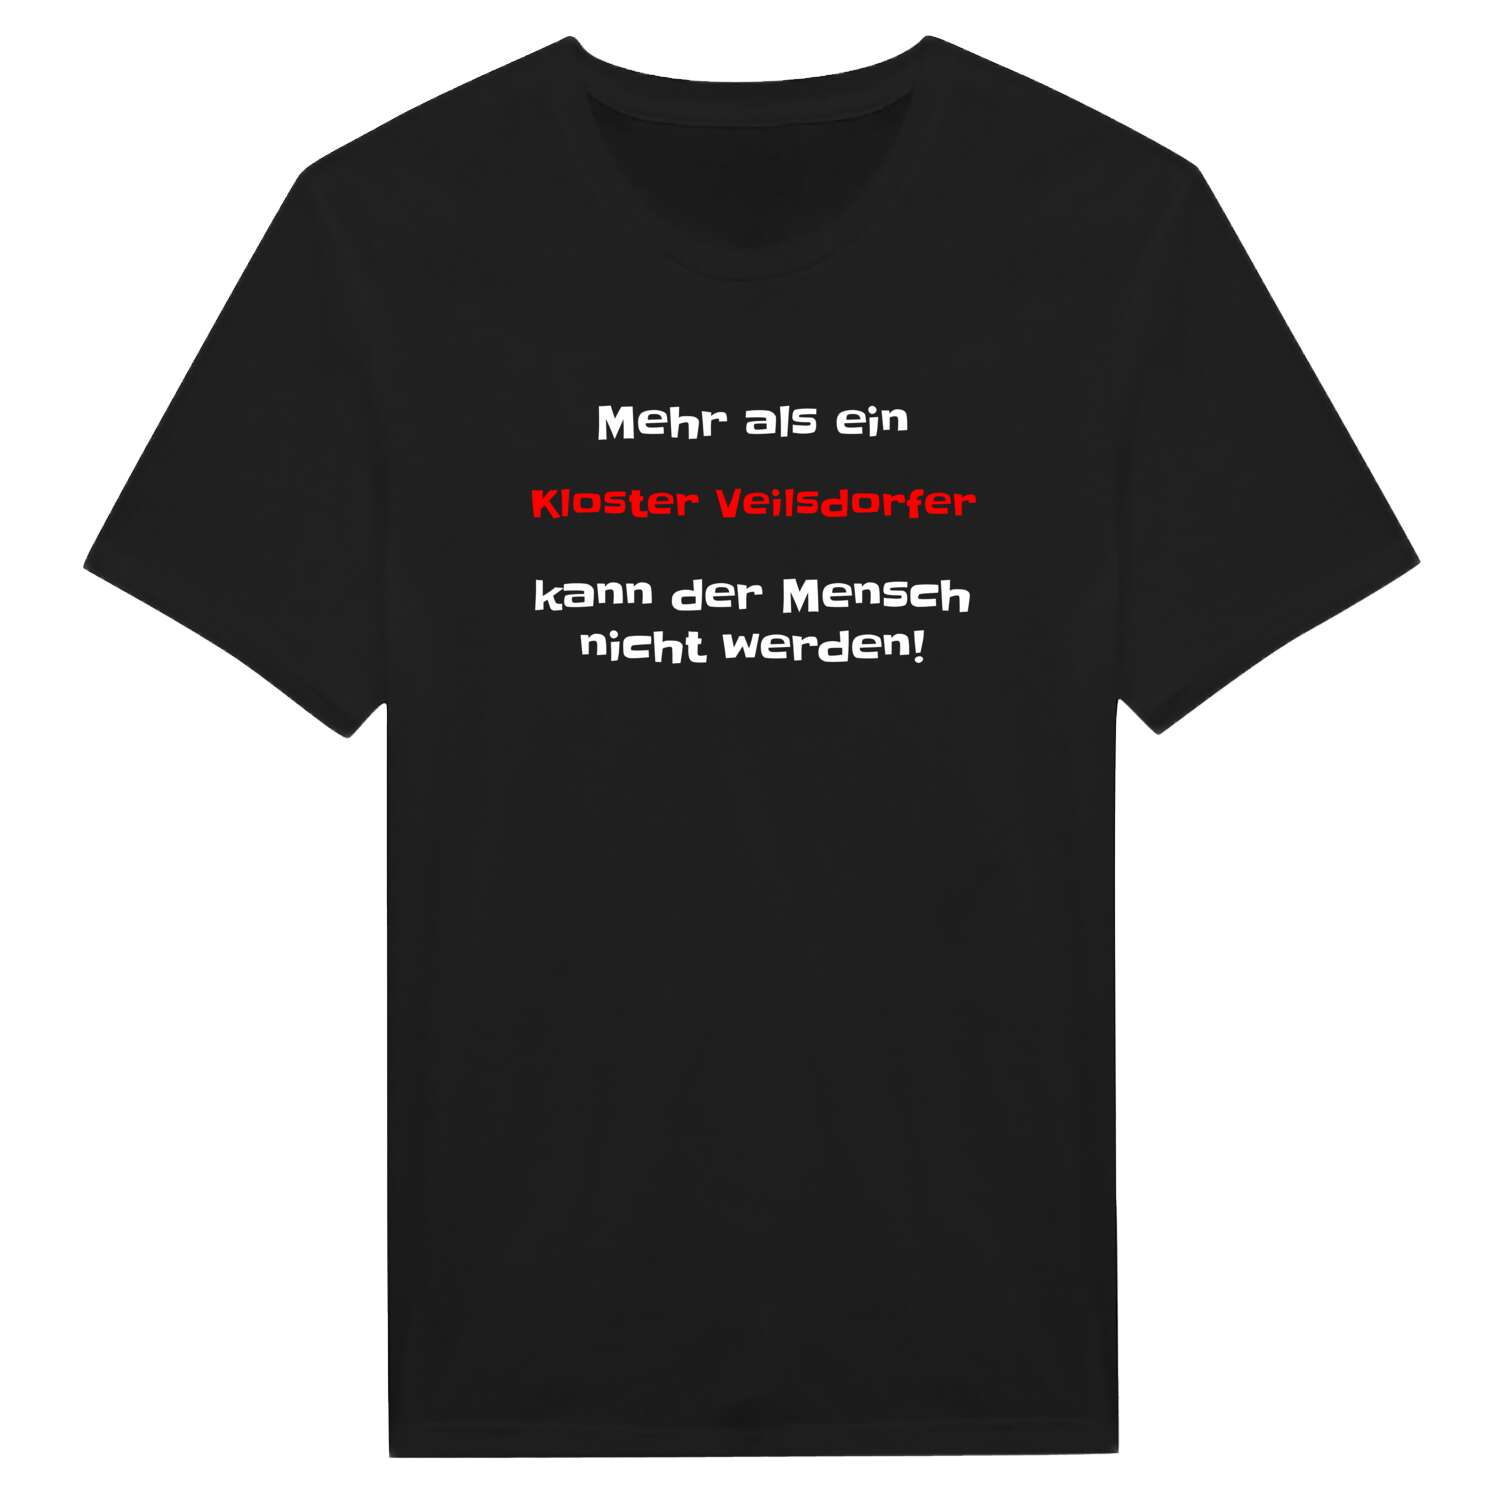 Kloster Veilsdorf T-Shirt »Mehr als ein«